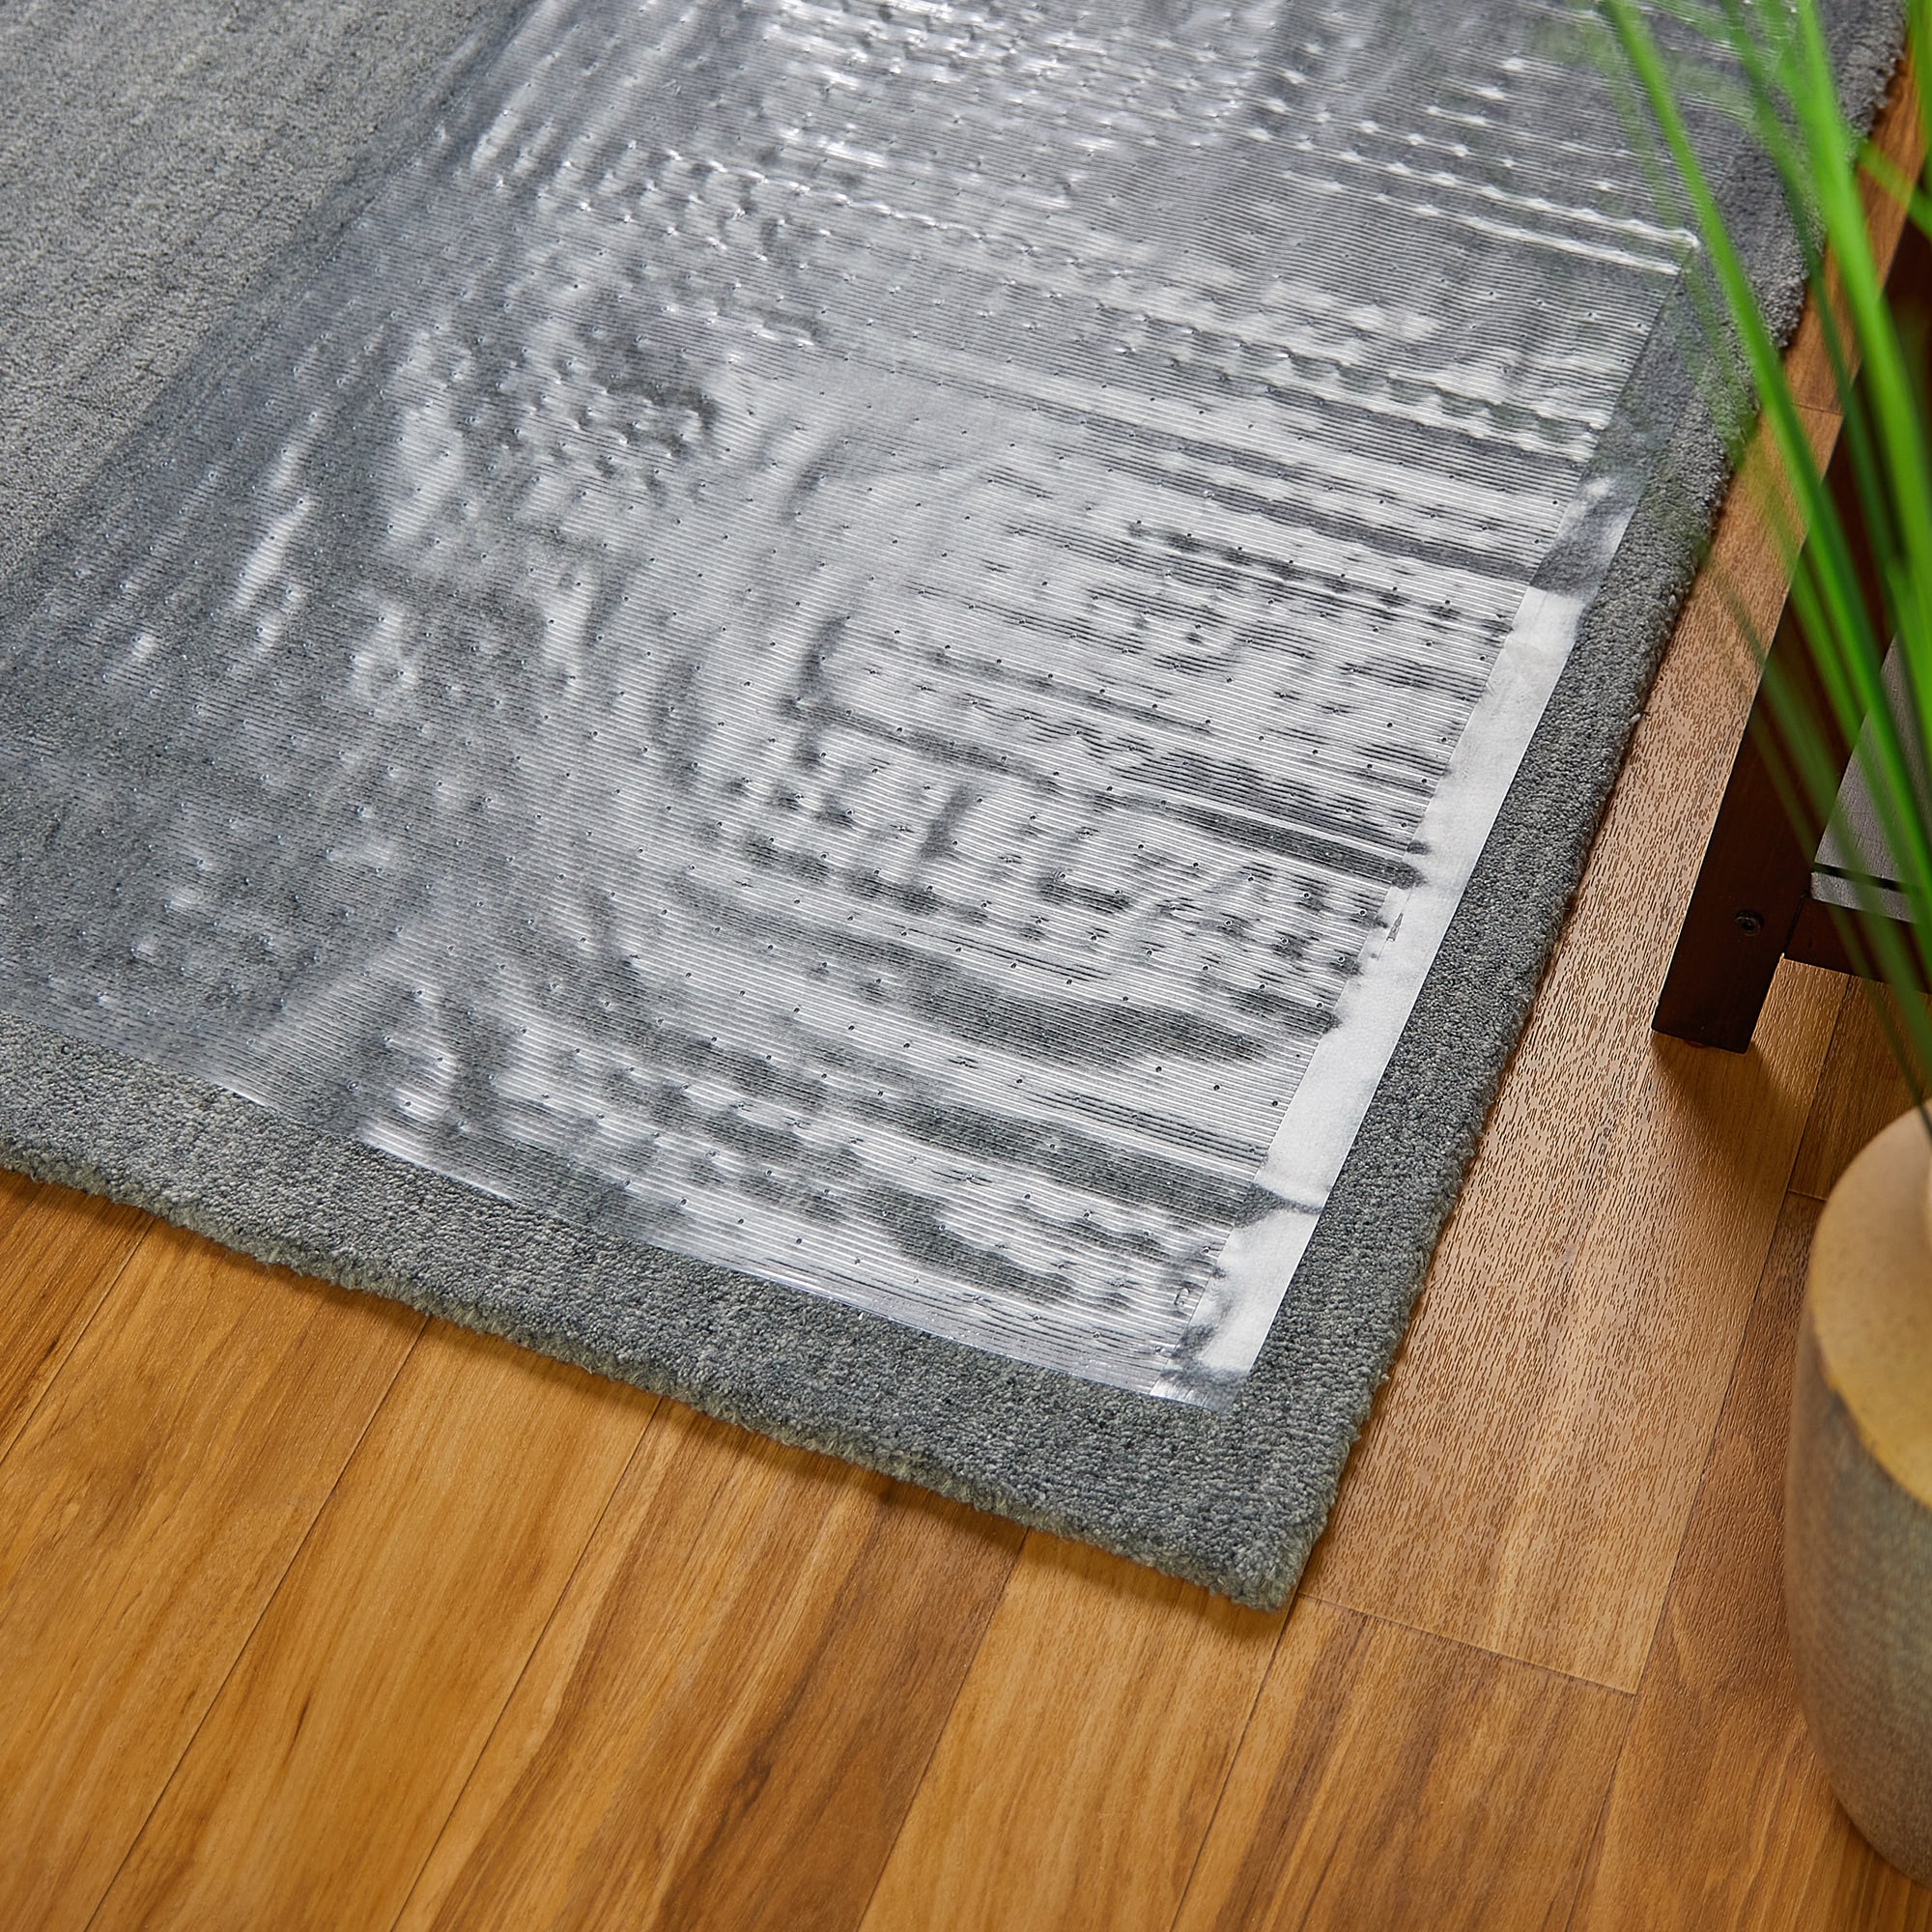 AbsorbaSelect Carpet Mat 4x10 feet - Indoor Entrance Mats